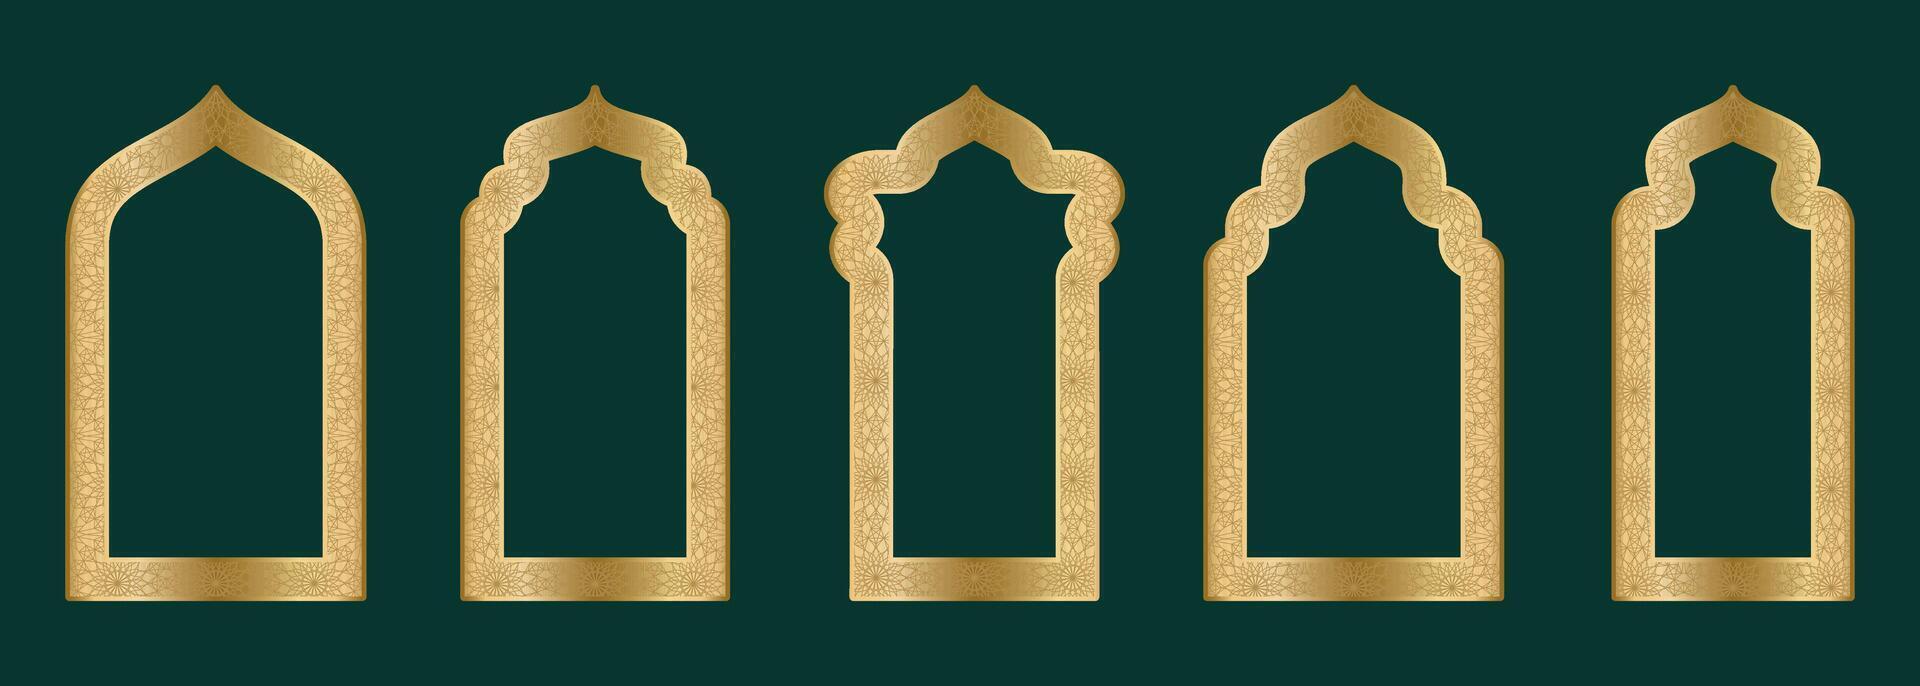 goud sier- boog kader vorm Islamitisch deur of venster met meetkundig girikh patroon, silhouet Arabisch boog. luxe reeks in oosters stijl. kaders in Arabisch moslim ontwerp voor Ramadan kareem. vector